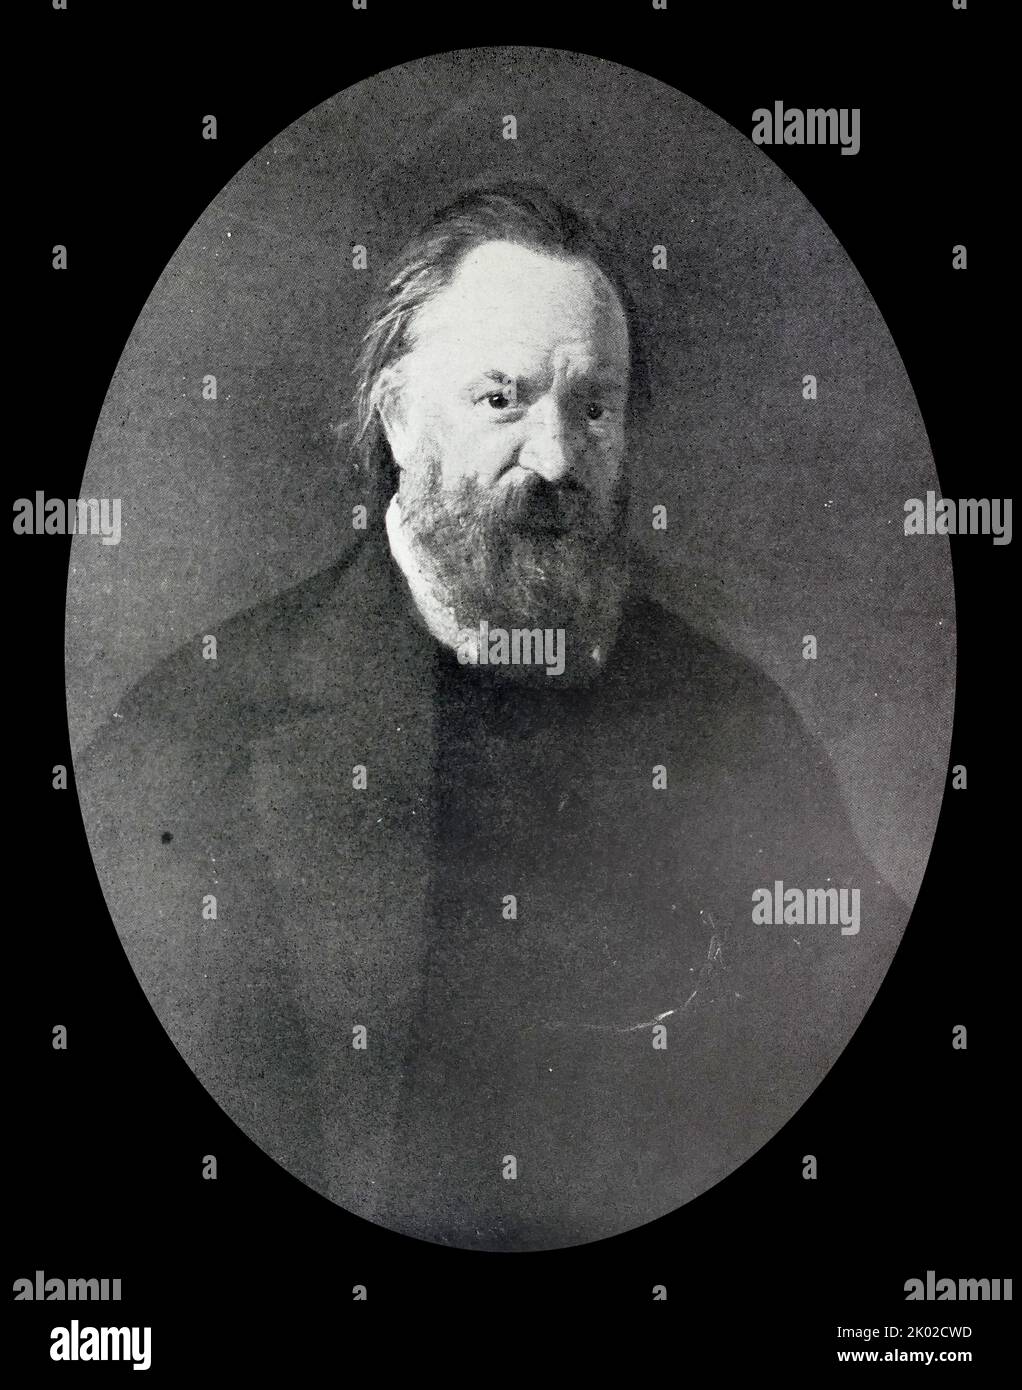 Alexander Ivanovich Herzen (1812 - 1870) , russischer Schriftsteller und Denker, bekannt als der "Vater des russischen Sozialismus" Porträt von Herzen von Nikolai Ge (1867) Stockfoto